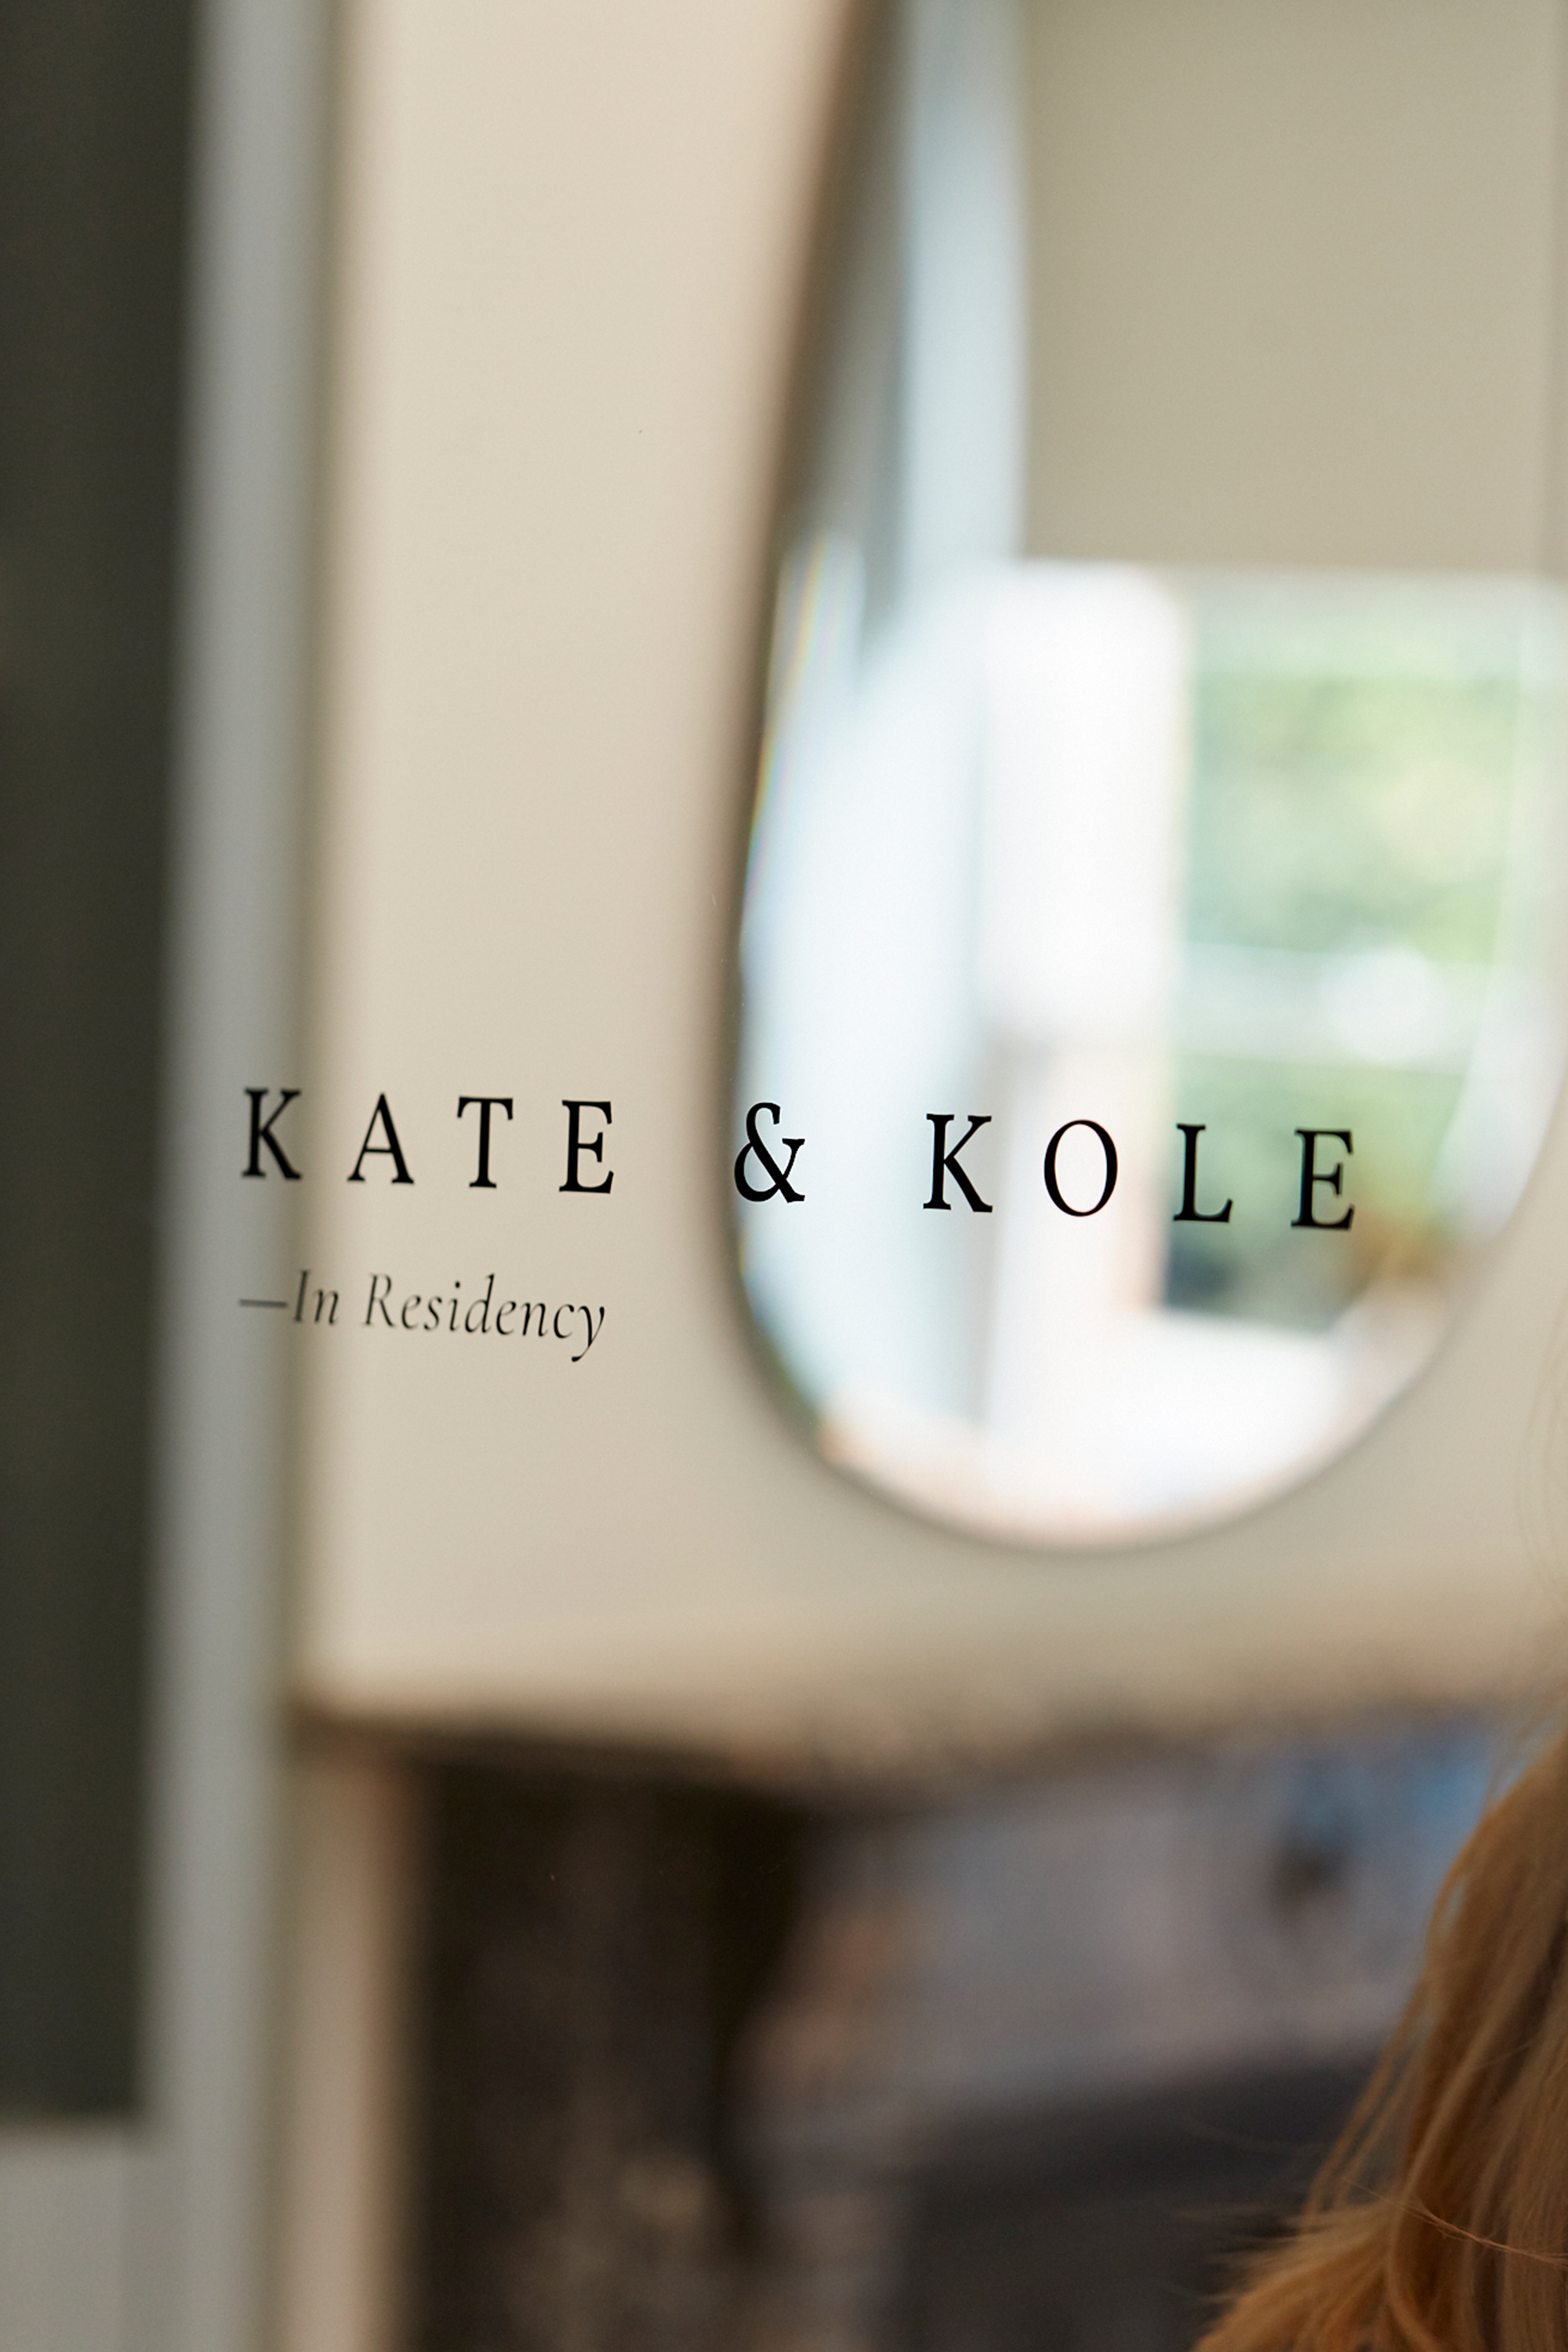 Meet Kate & Kole